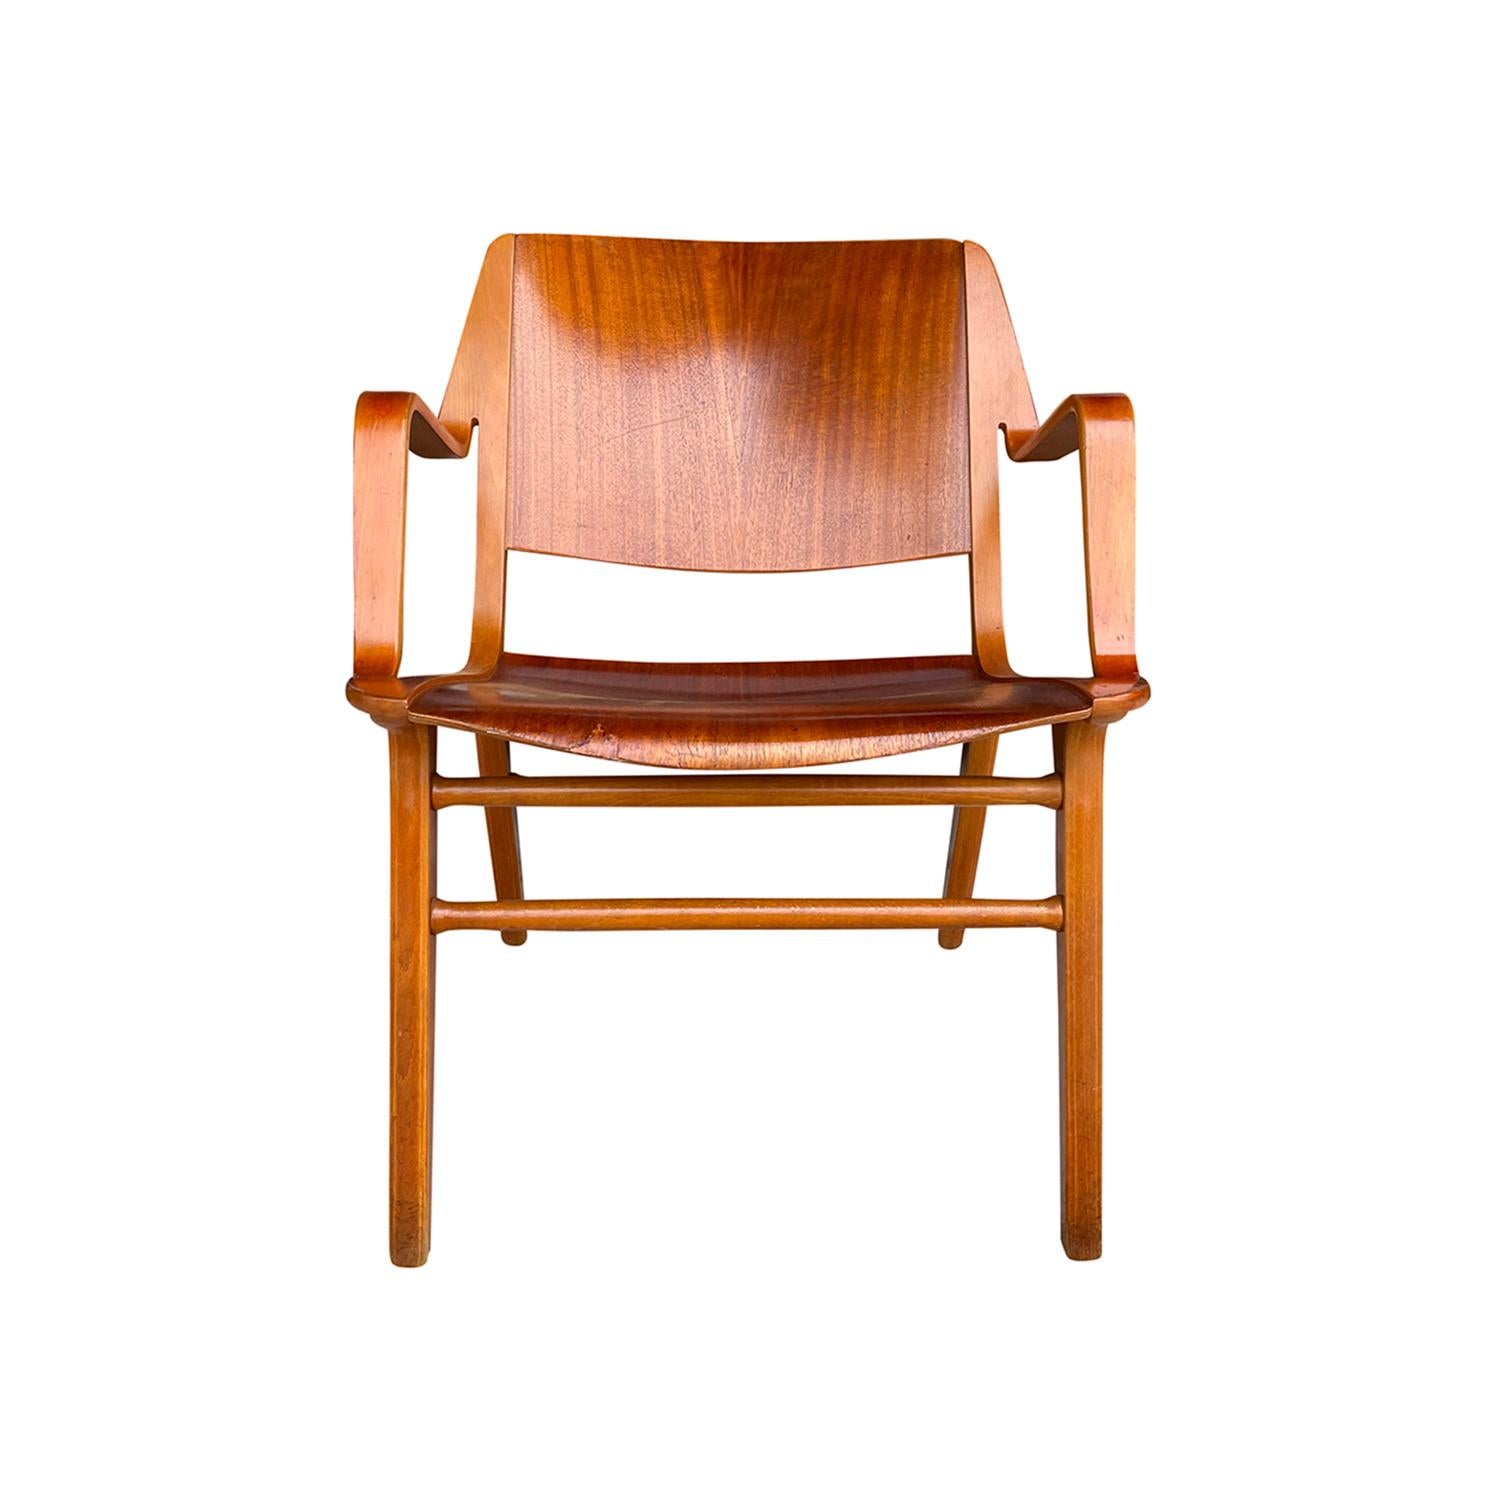 Fauteuil d'appoint danois en bois, de couleur marron clair, conçu par Peter Hvidt & Orla Mølgaard - Nielsen et produit par Fritz Hansen. La chaise est formée de bois de hêtre stratifié, le siège est fait de bois de teck sculpté à la main et de